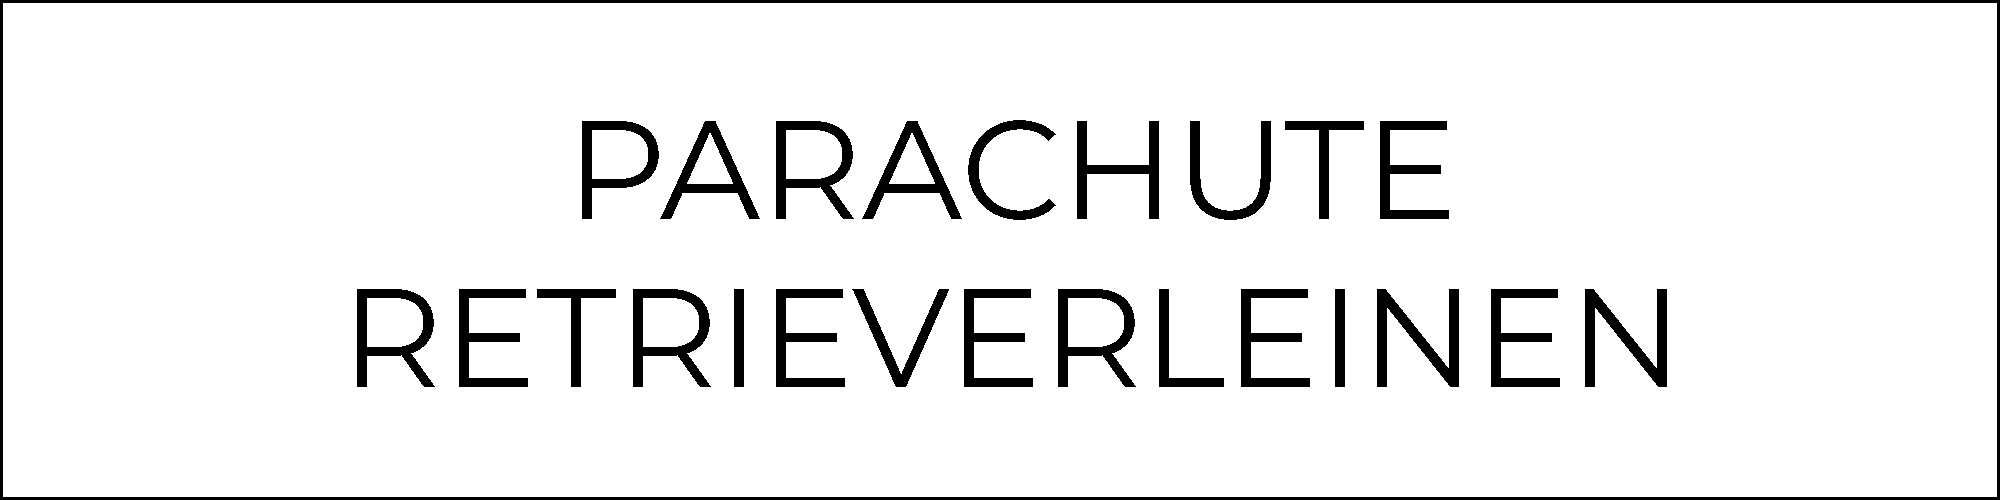 Parachute_Retrieverleinen